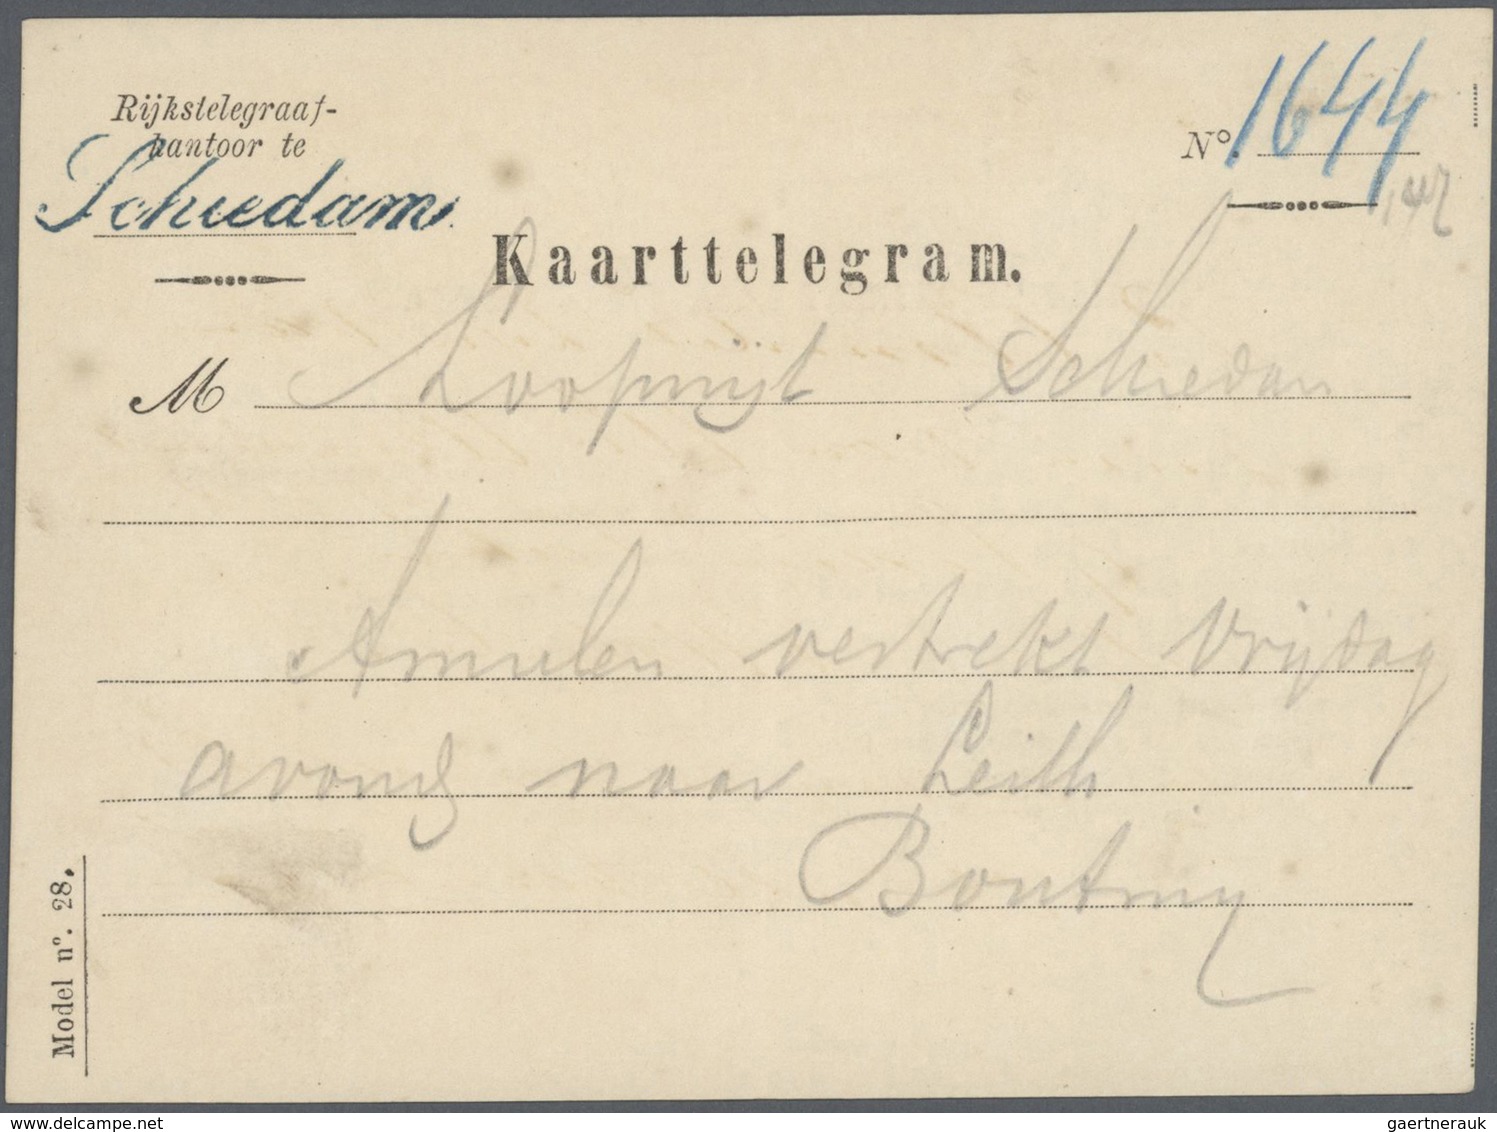 GA/Br/Brfst Niederlande: 1869 - 1930 ca. Spannende Partie von über 100 Belegen, dabei Briefe, Ganzsachen, einieg